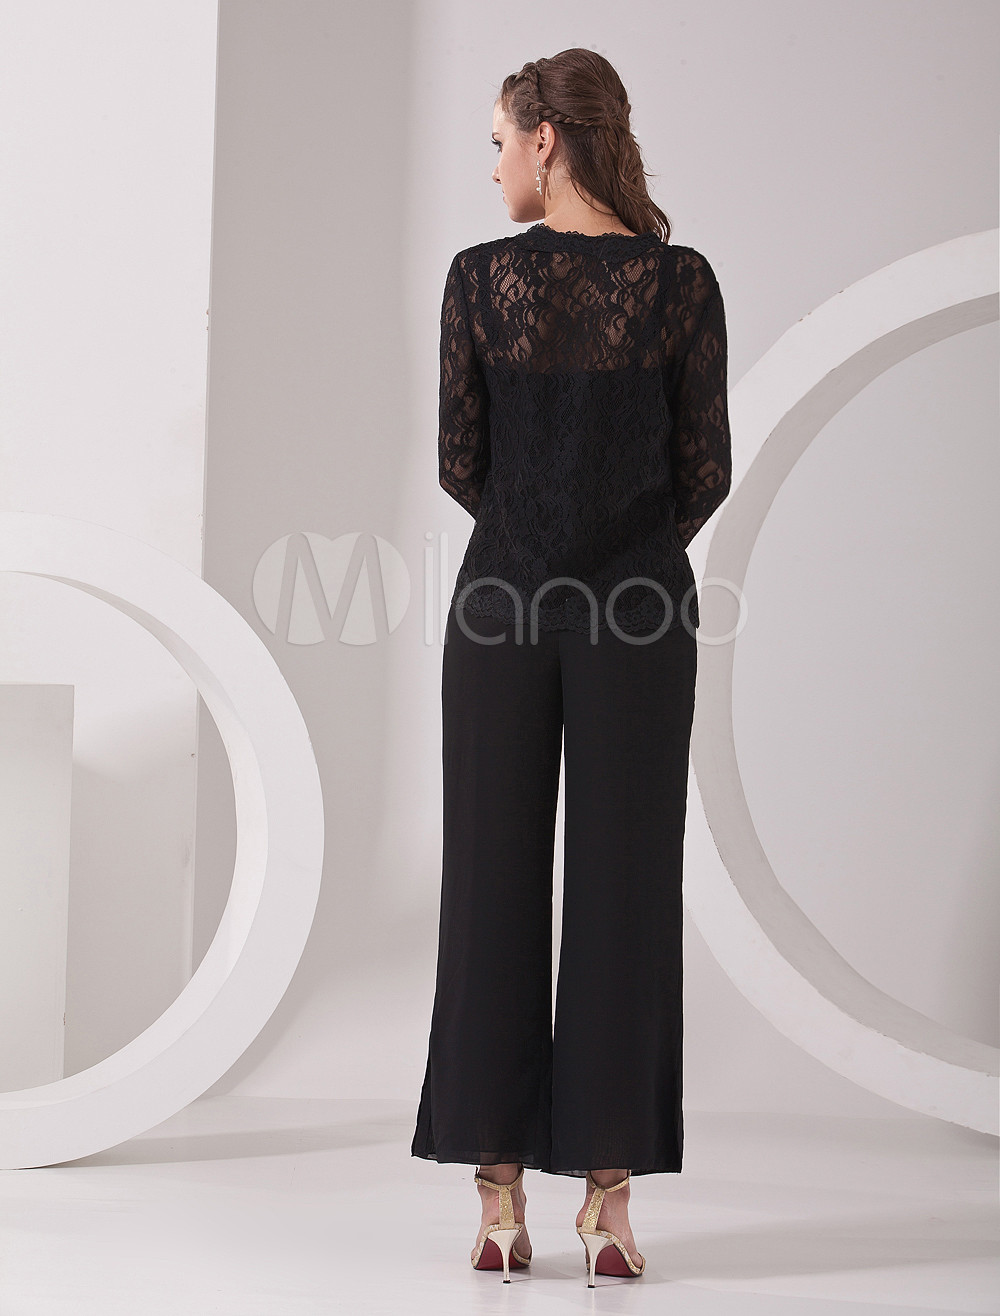 Elegant Black Chiffon Mother Of The Bride Pant Suits - Milanoo.com